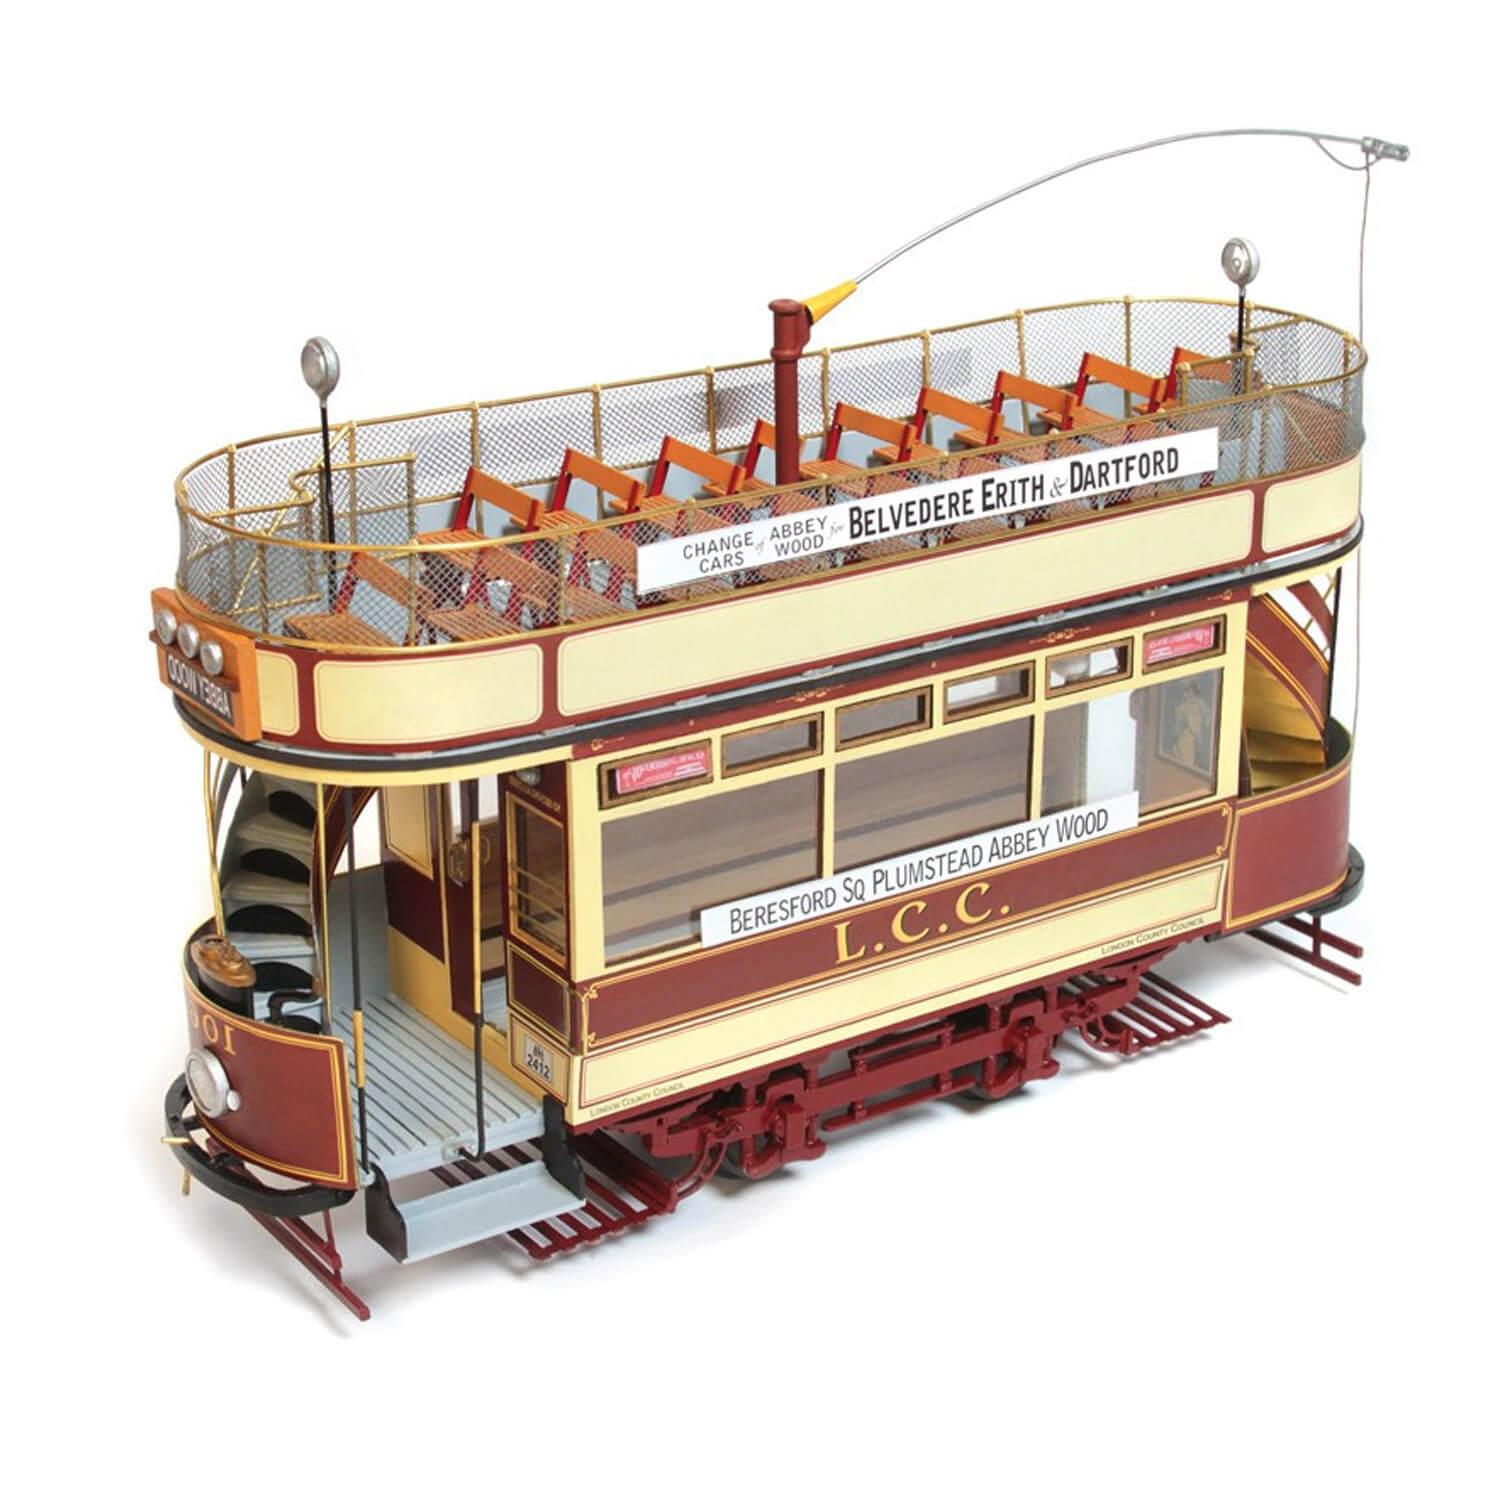 Maquette tramway en bois : Lisbonne - Jeux et jouets OCCRE